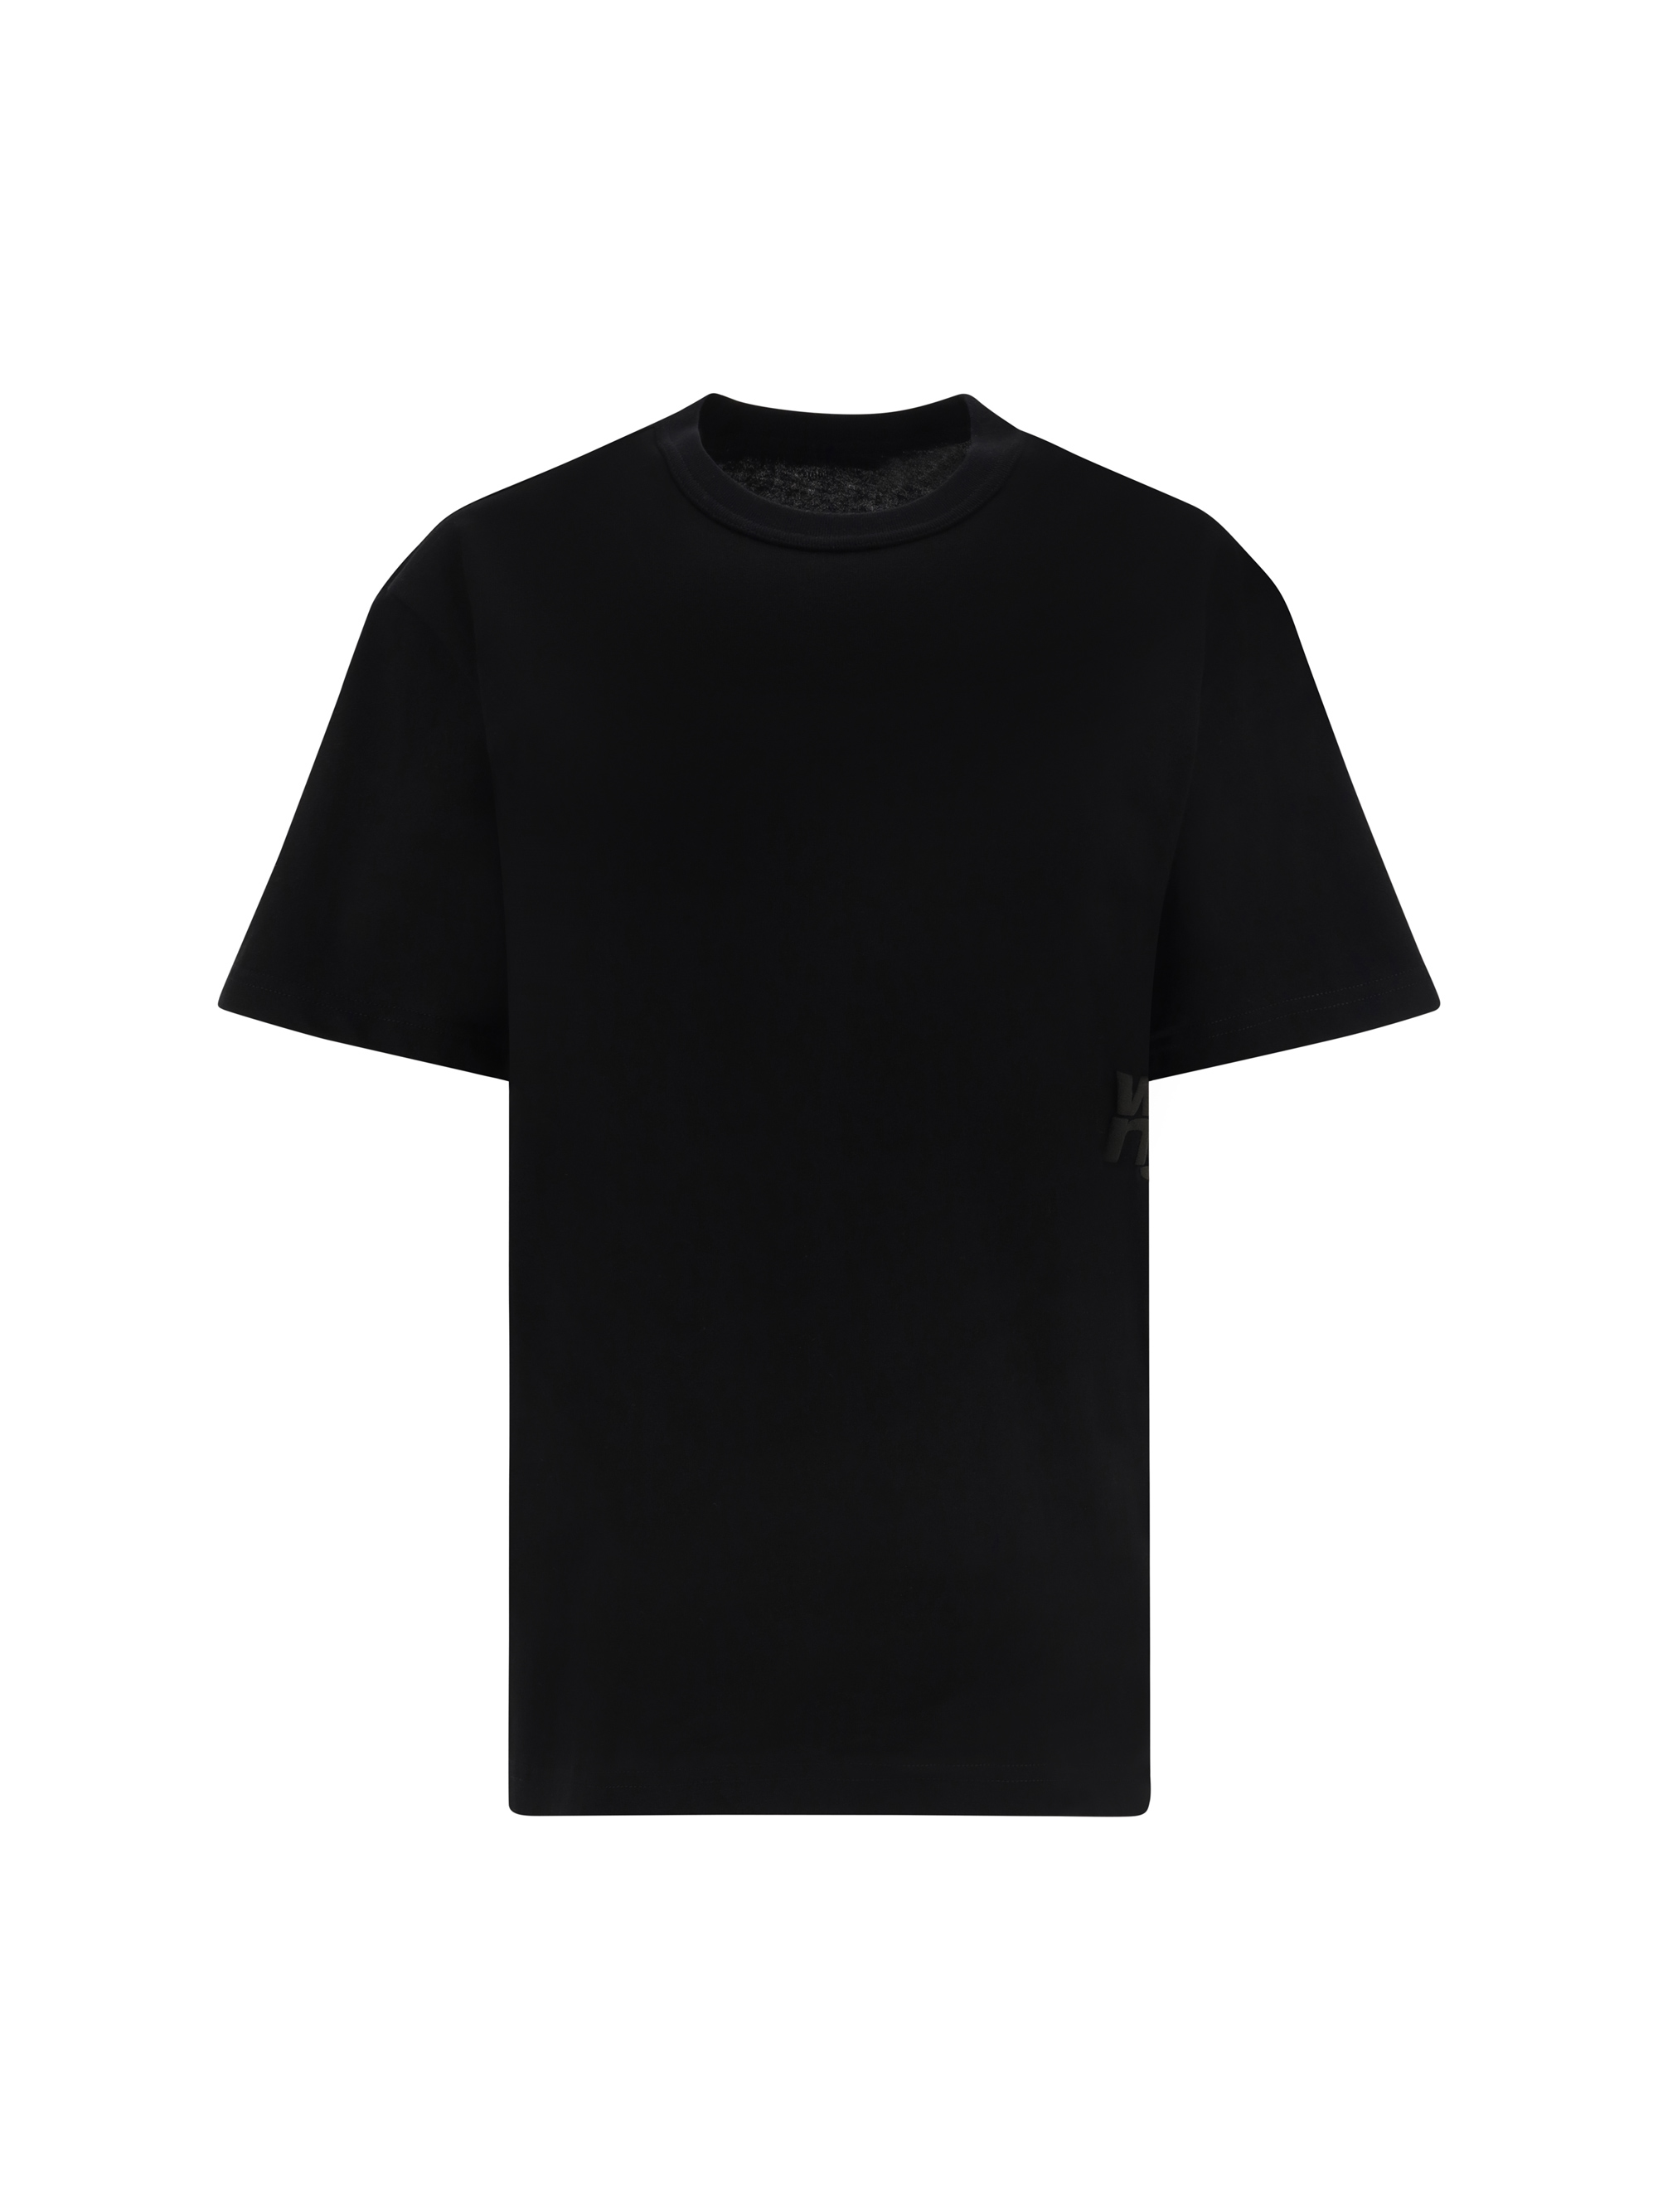 alexander wang - essential t-shirt